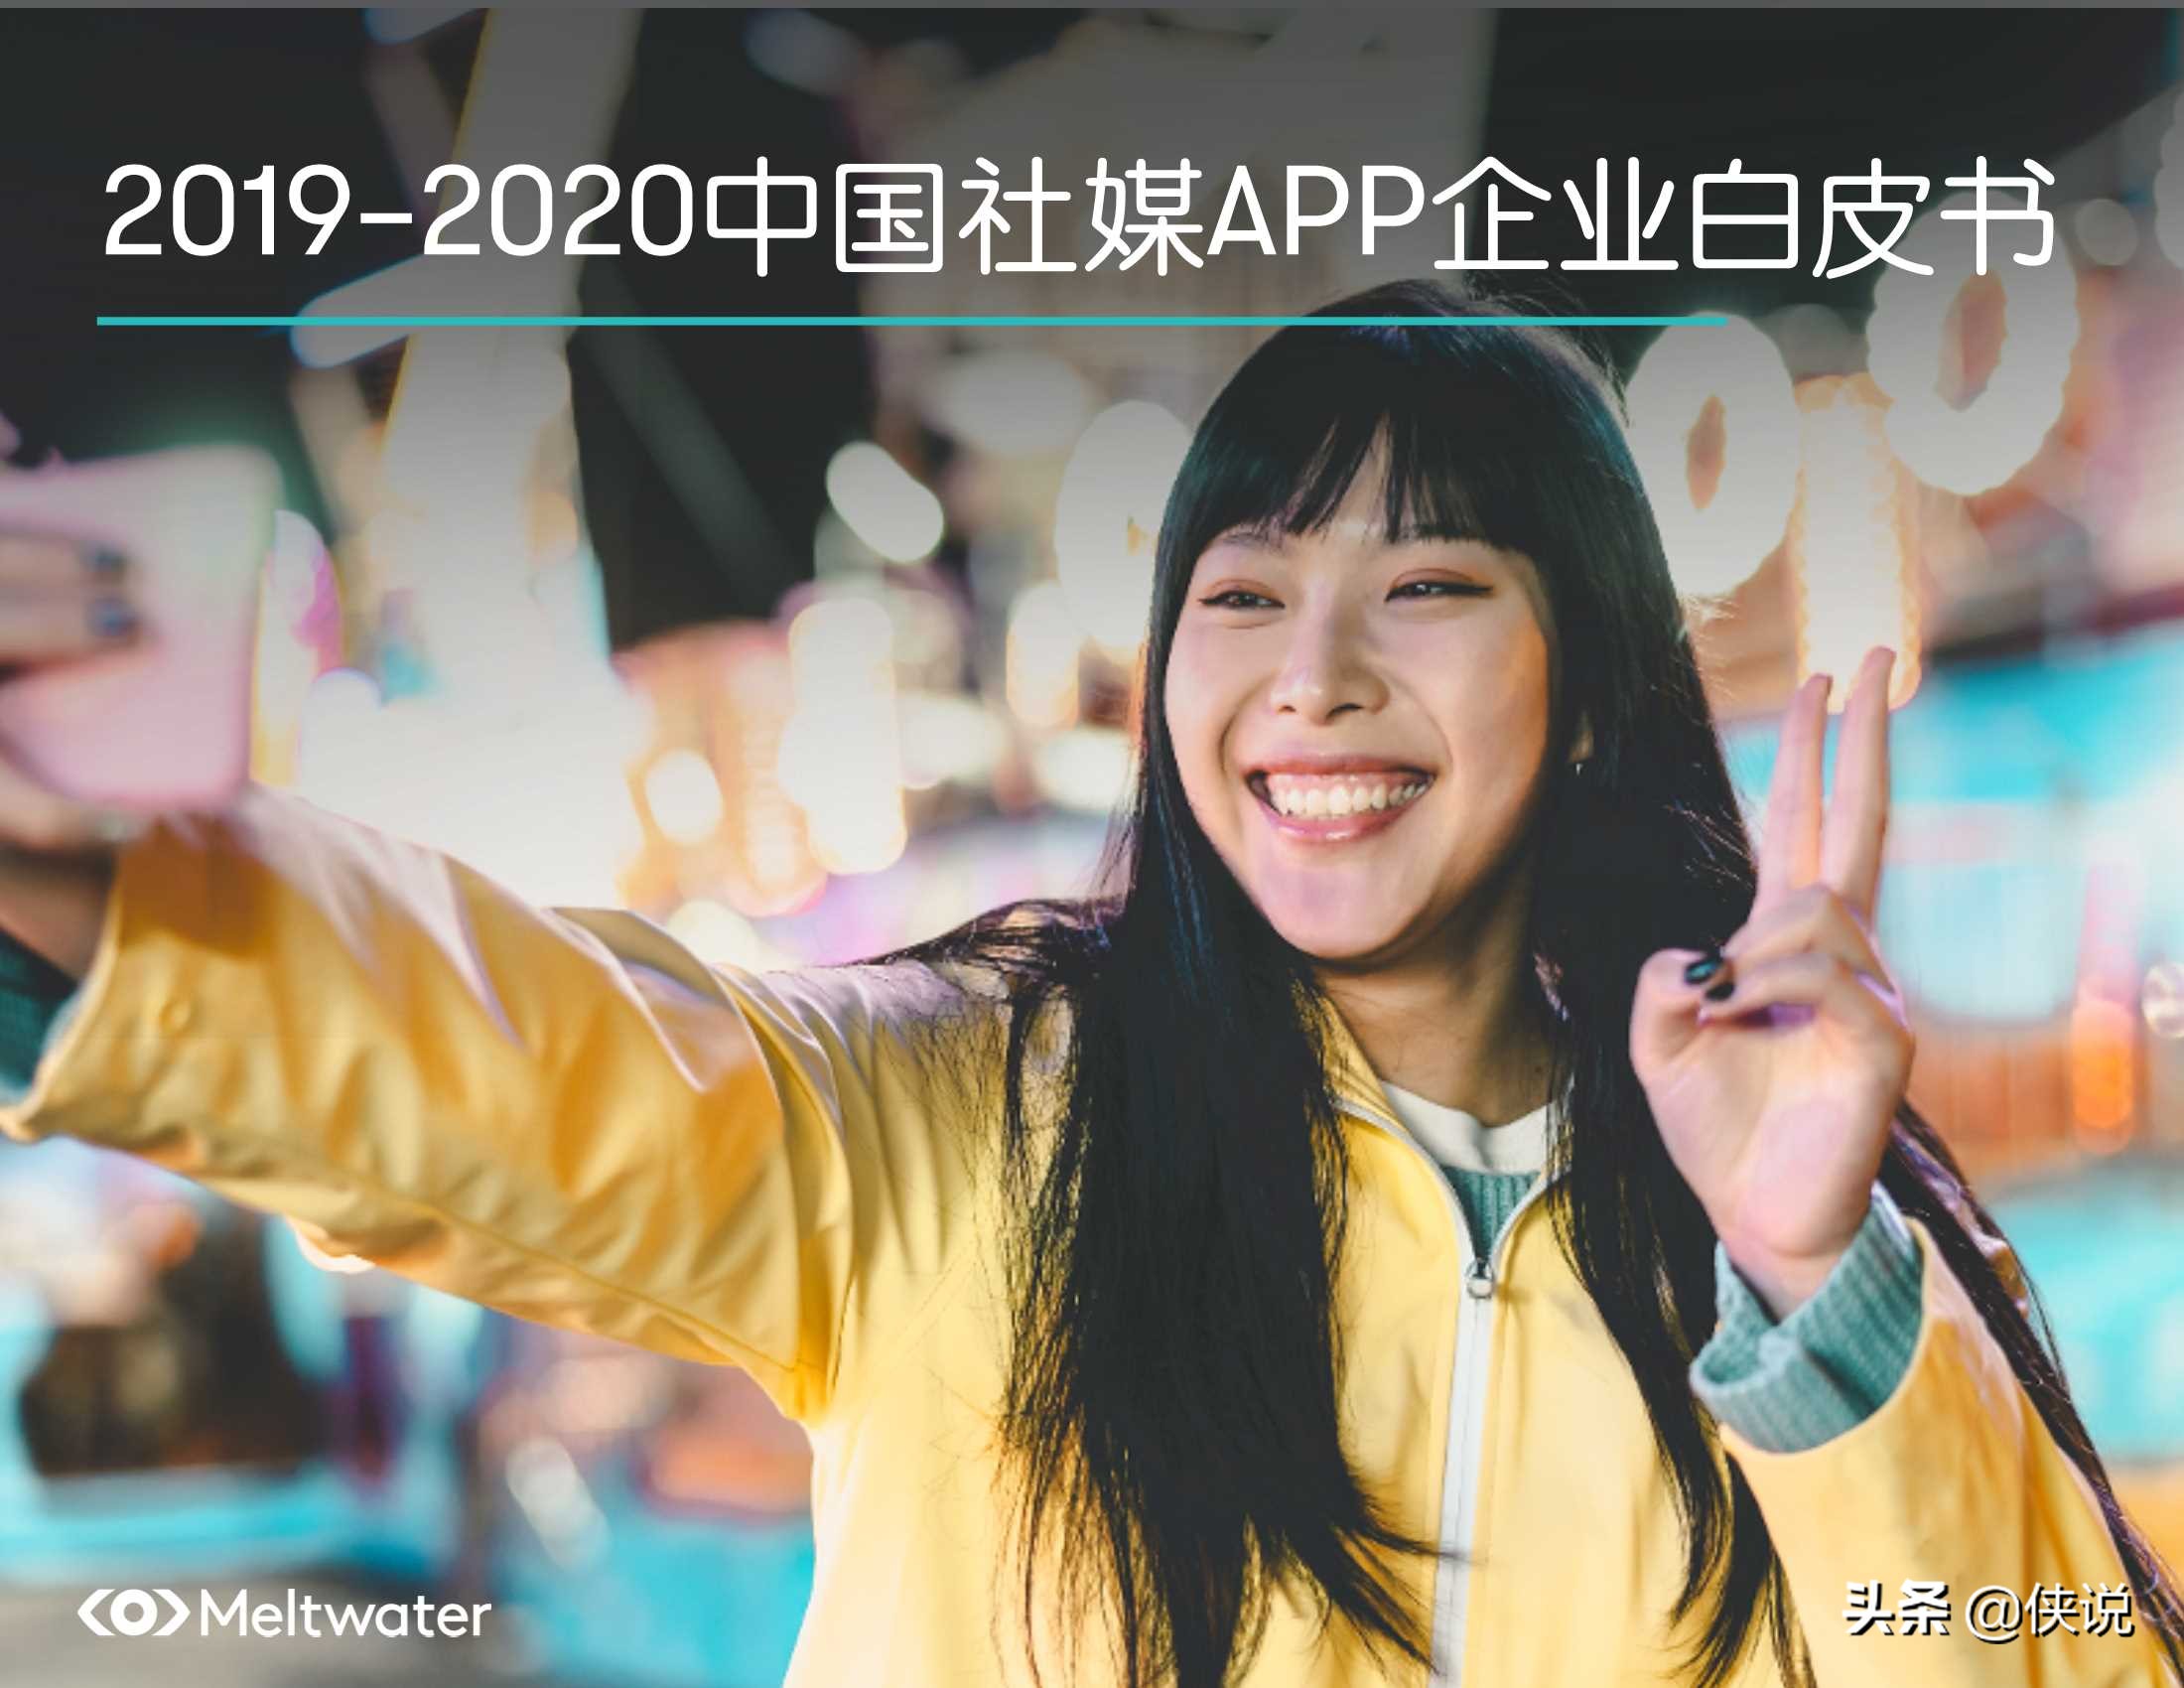 2019-2020中国社媒APP企业白皮书